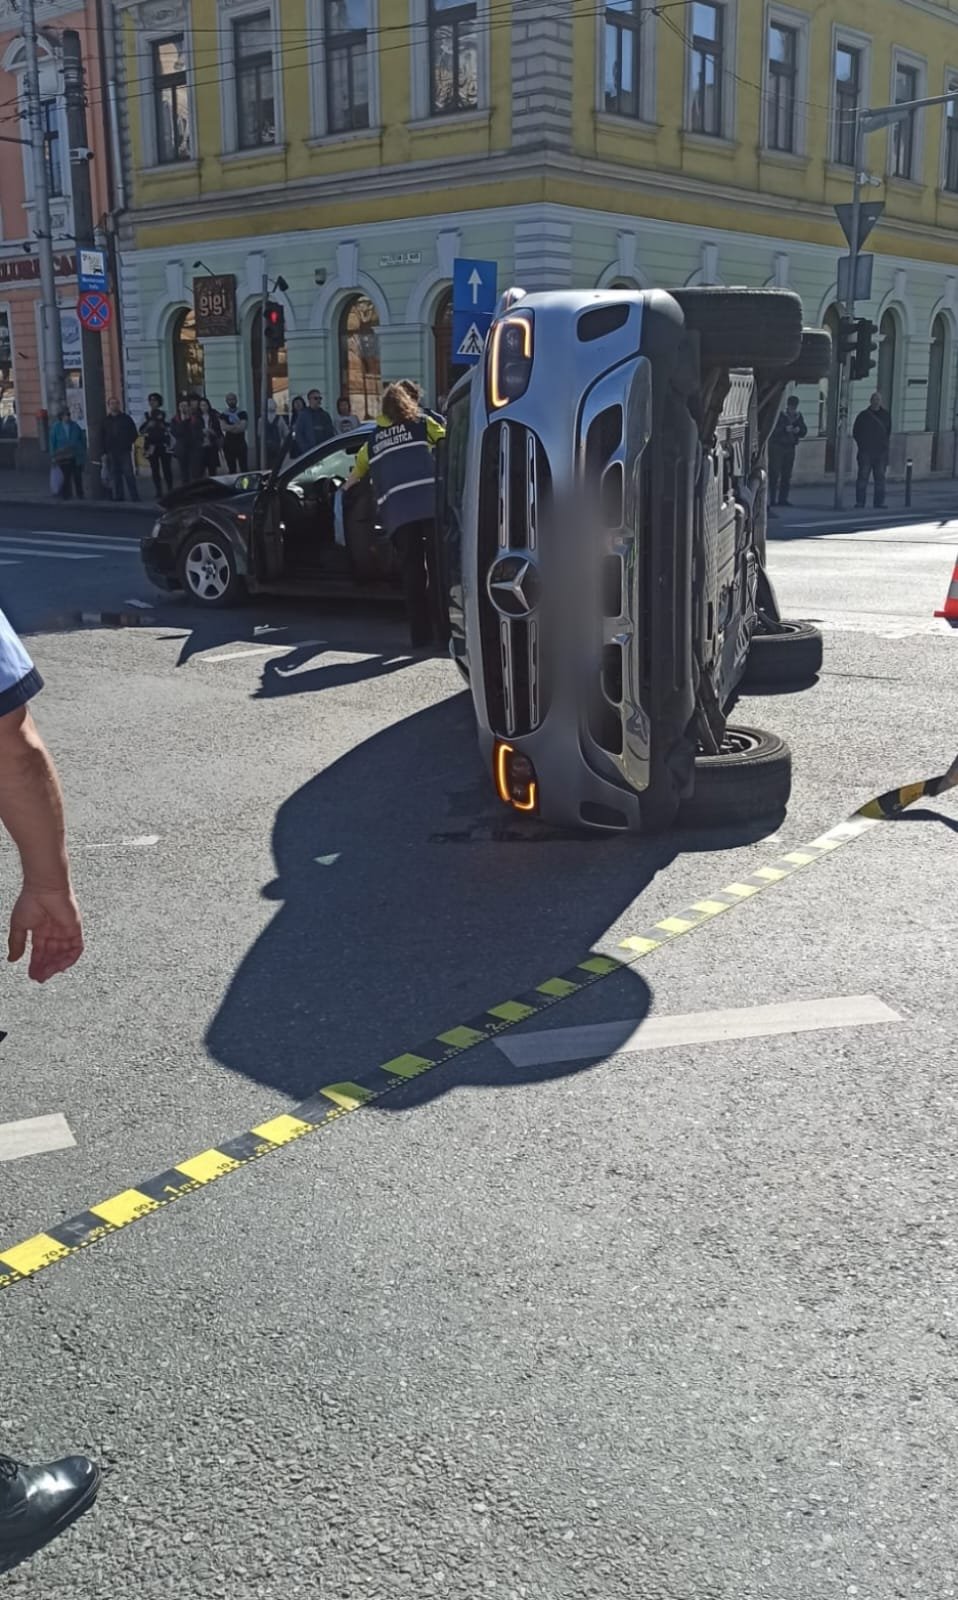 ACCIDENT în centrul Clujului. Una dintre mașini, răsturnată/ Au intervenit mai multe ambulanțe și descarcerarea